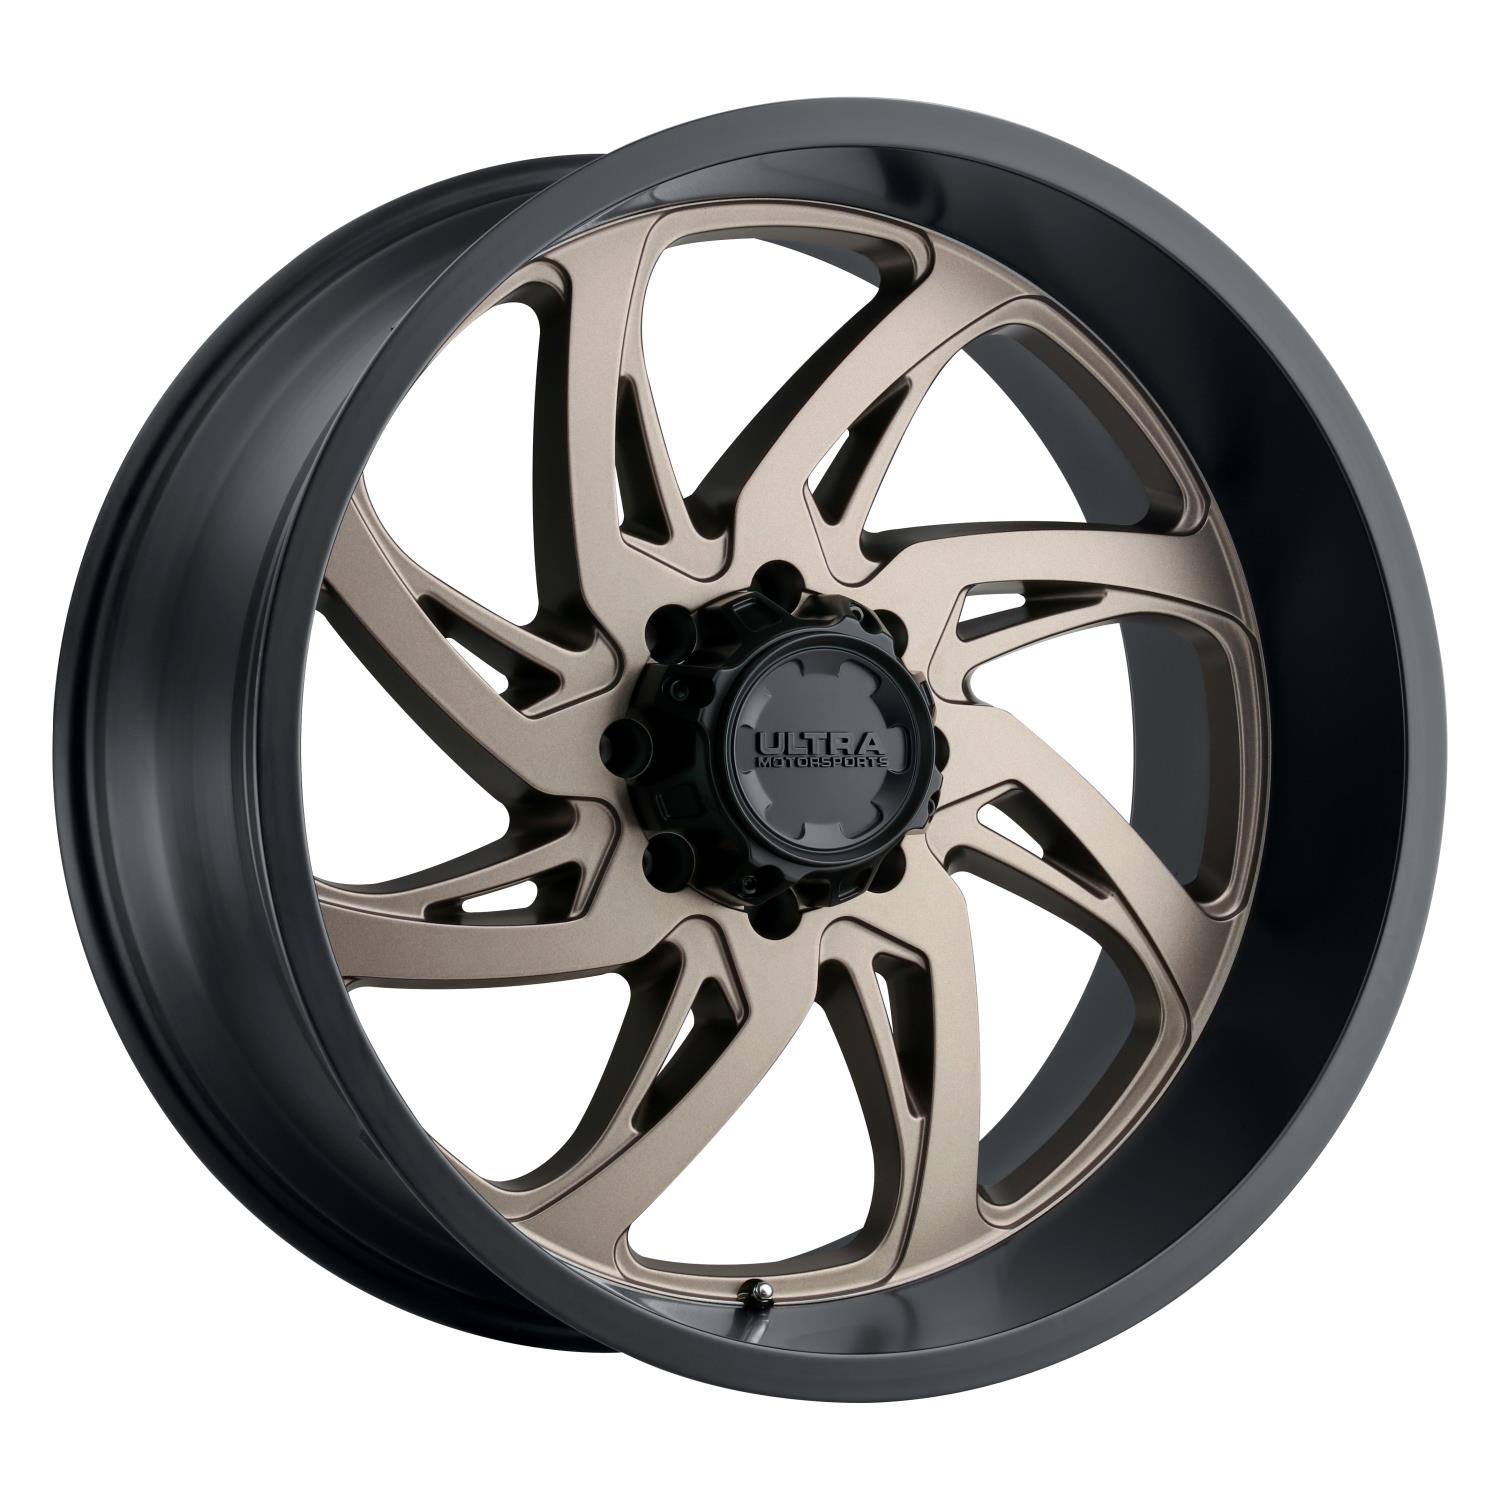 230-Series Villain Wheel, Size: 18x9", Bolt Pattern: 6x5.5"/6x135 mm [Dark Satin Bronze w/Satin Black Lip]